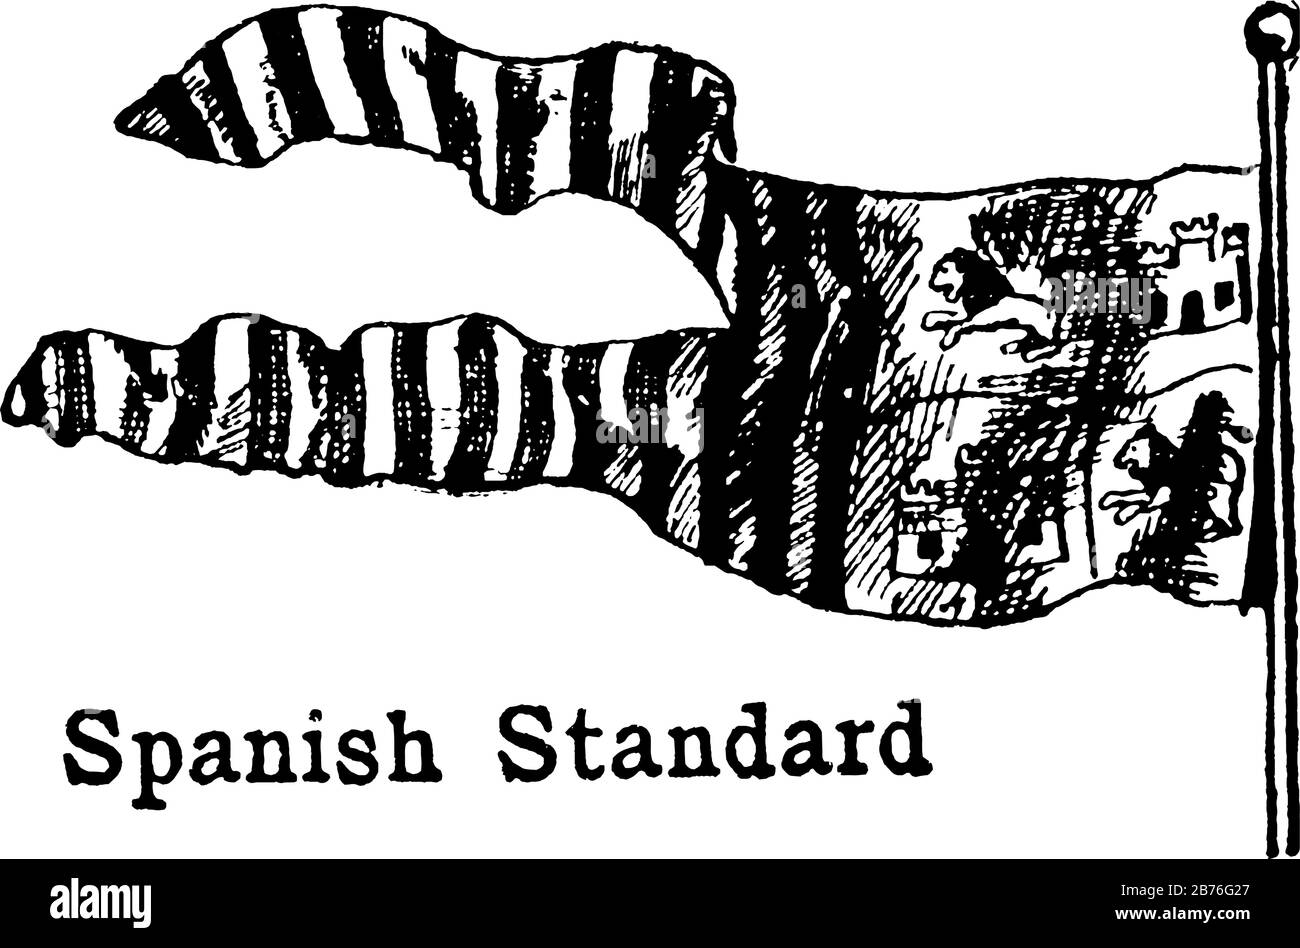 Die spanische Standard-Flagge, diese Fahne hat vertikale Bänder, sie hat zwei Löwen und zwei Burg mit drei Säulen zur Hebeseite hin, Vintage-Zeichnung Stock Vektor